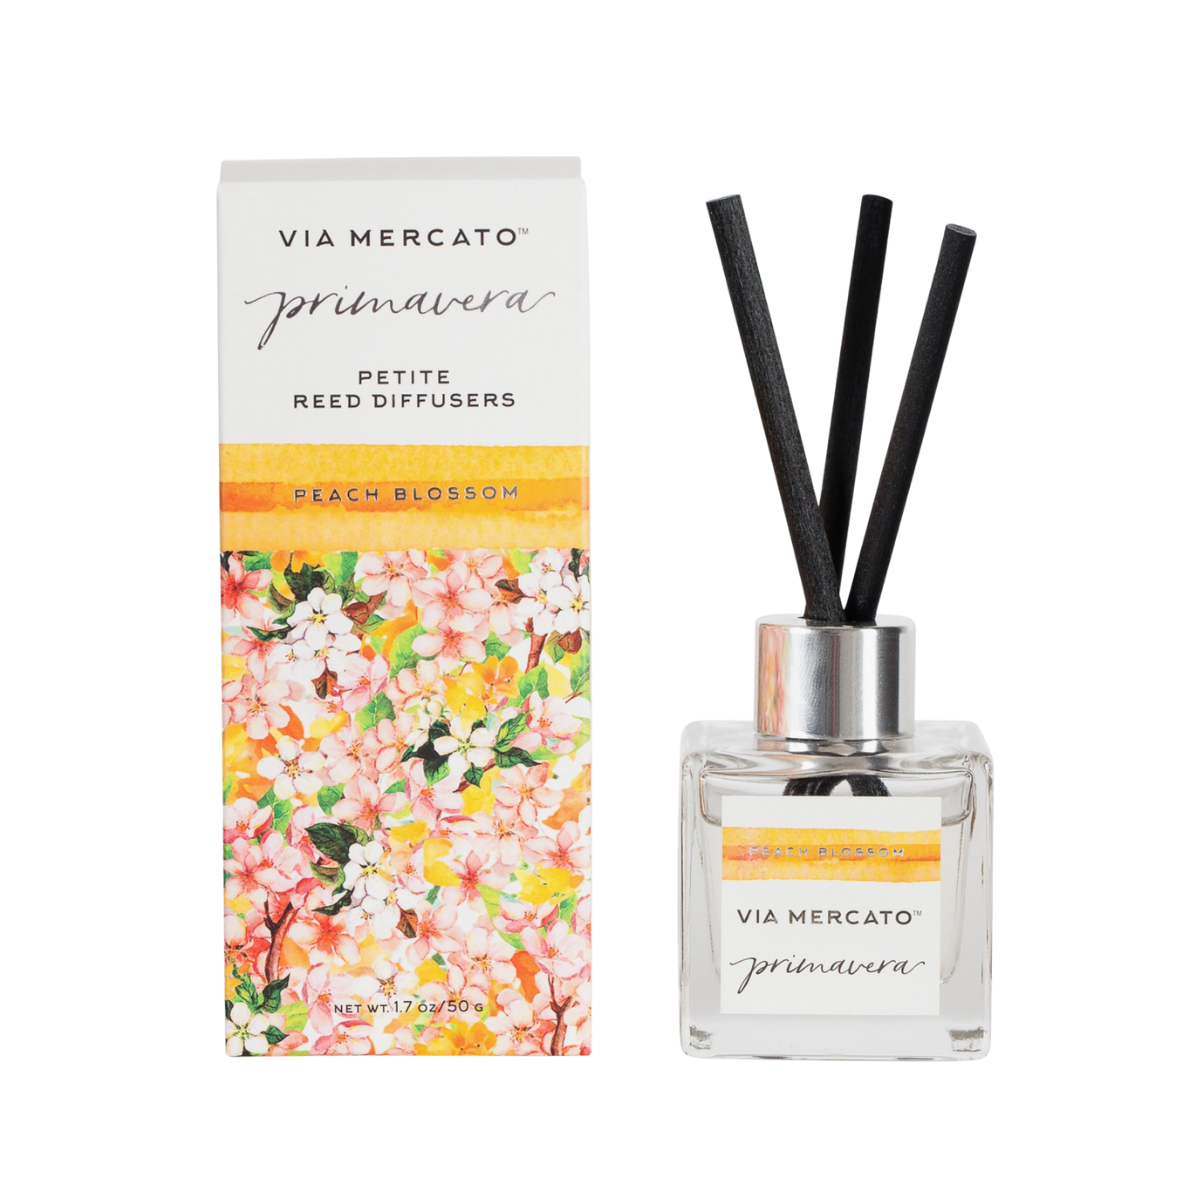 Via Mercato - Primavera Peach Blossom petit Reed Diffusers 